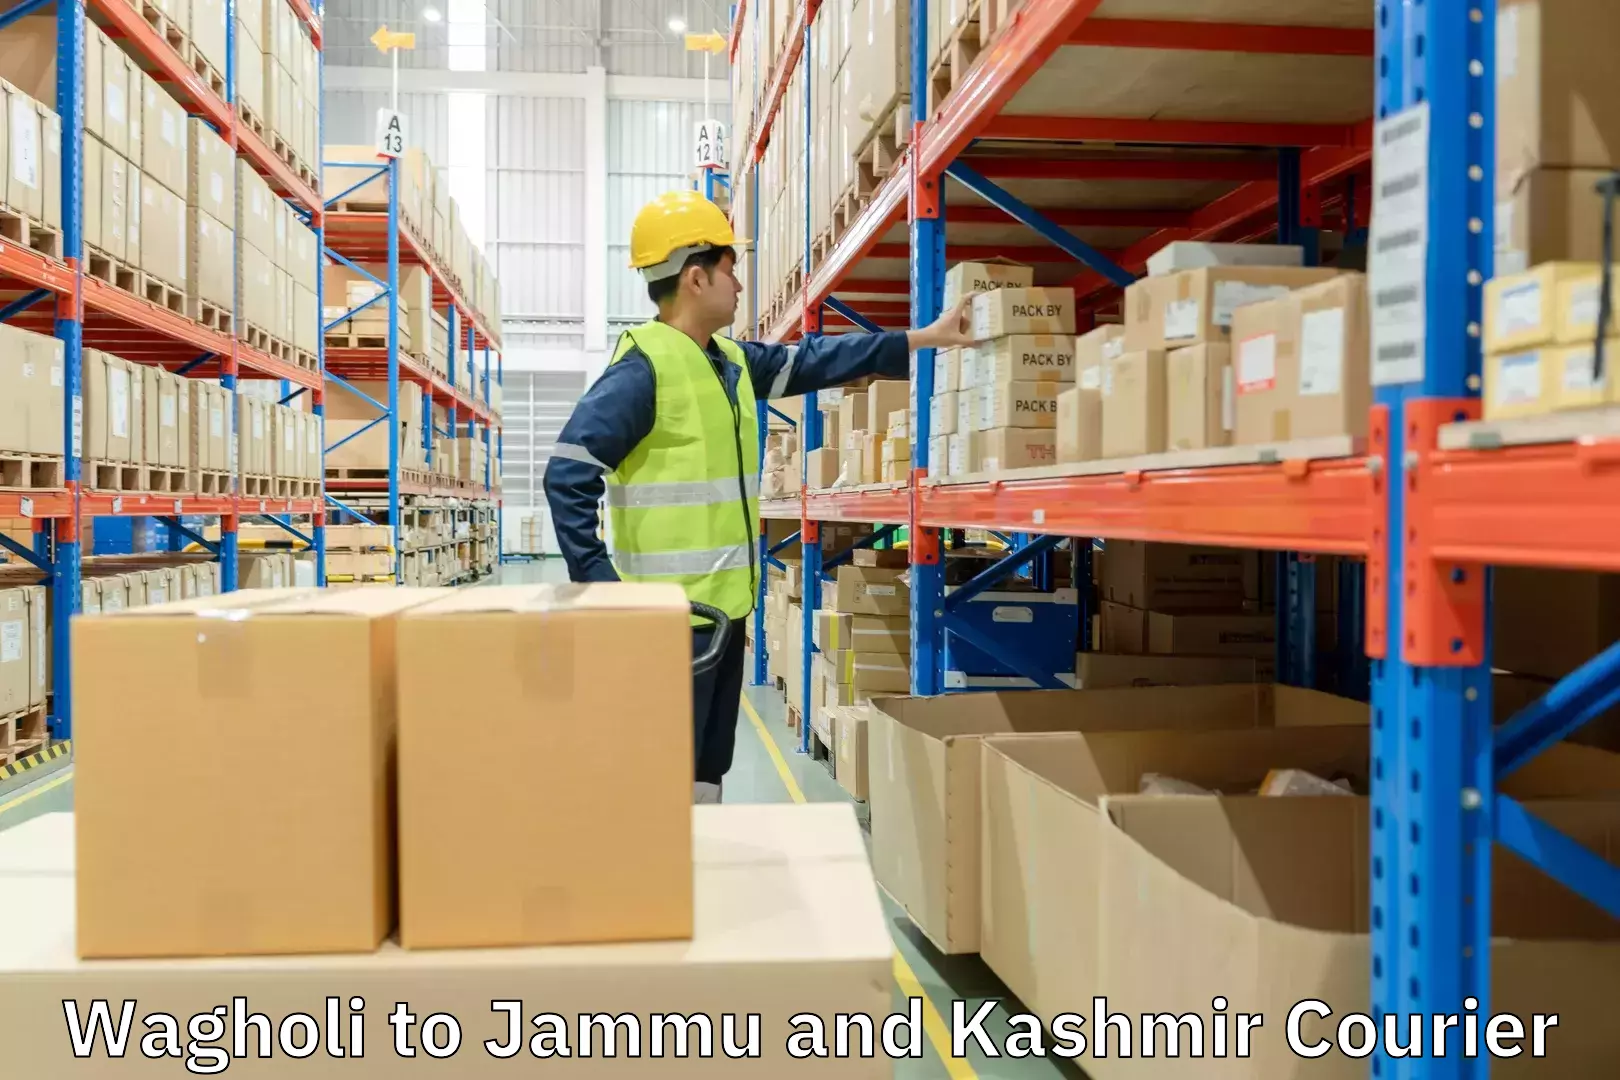 Customer-centric shipping Wagholi to Jammu and Kashmir